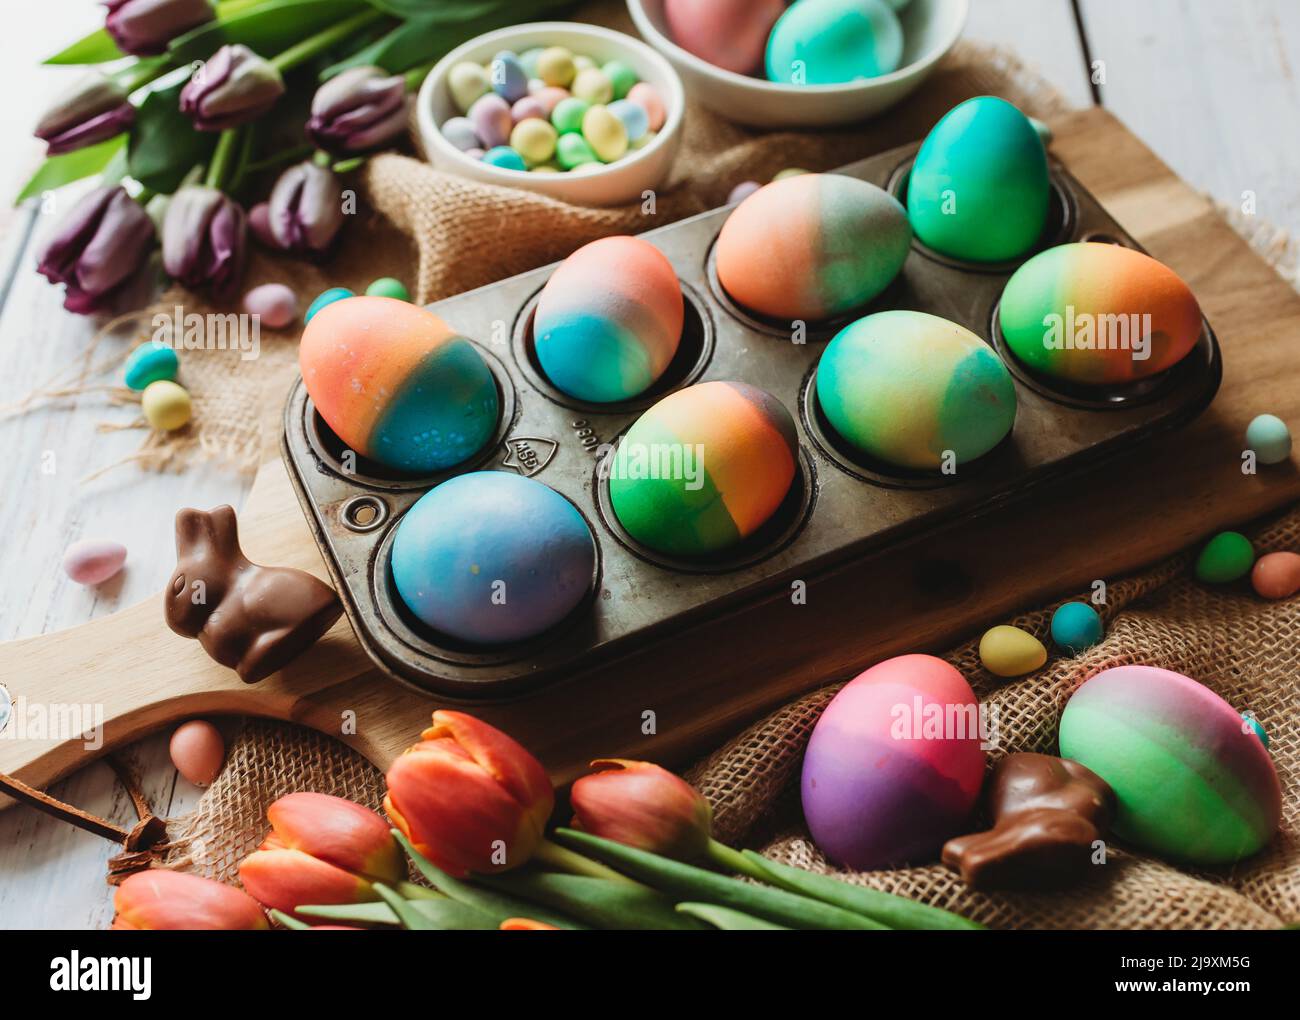 Bandeja de huevos de Pascua de colores brillantes rodeada de tulipanes. Foto de stock